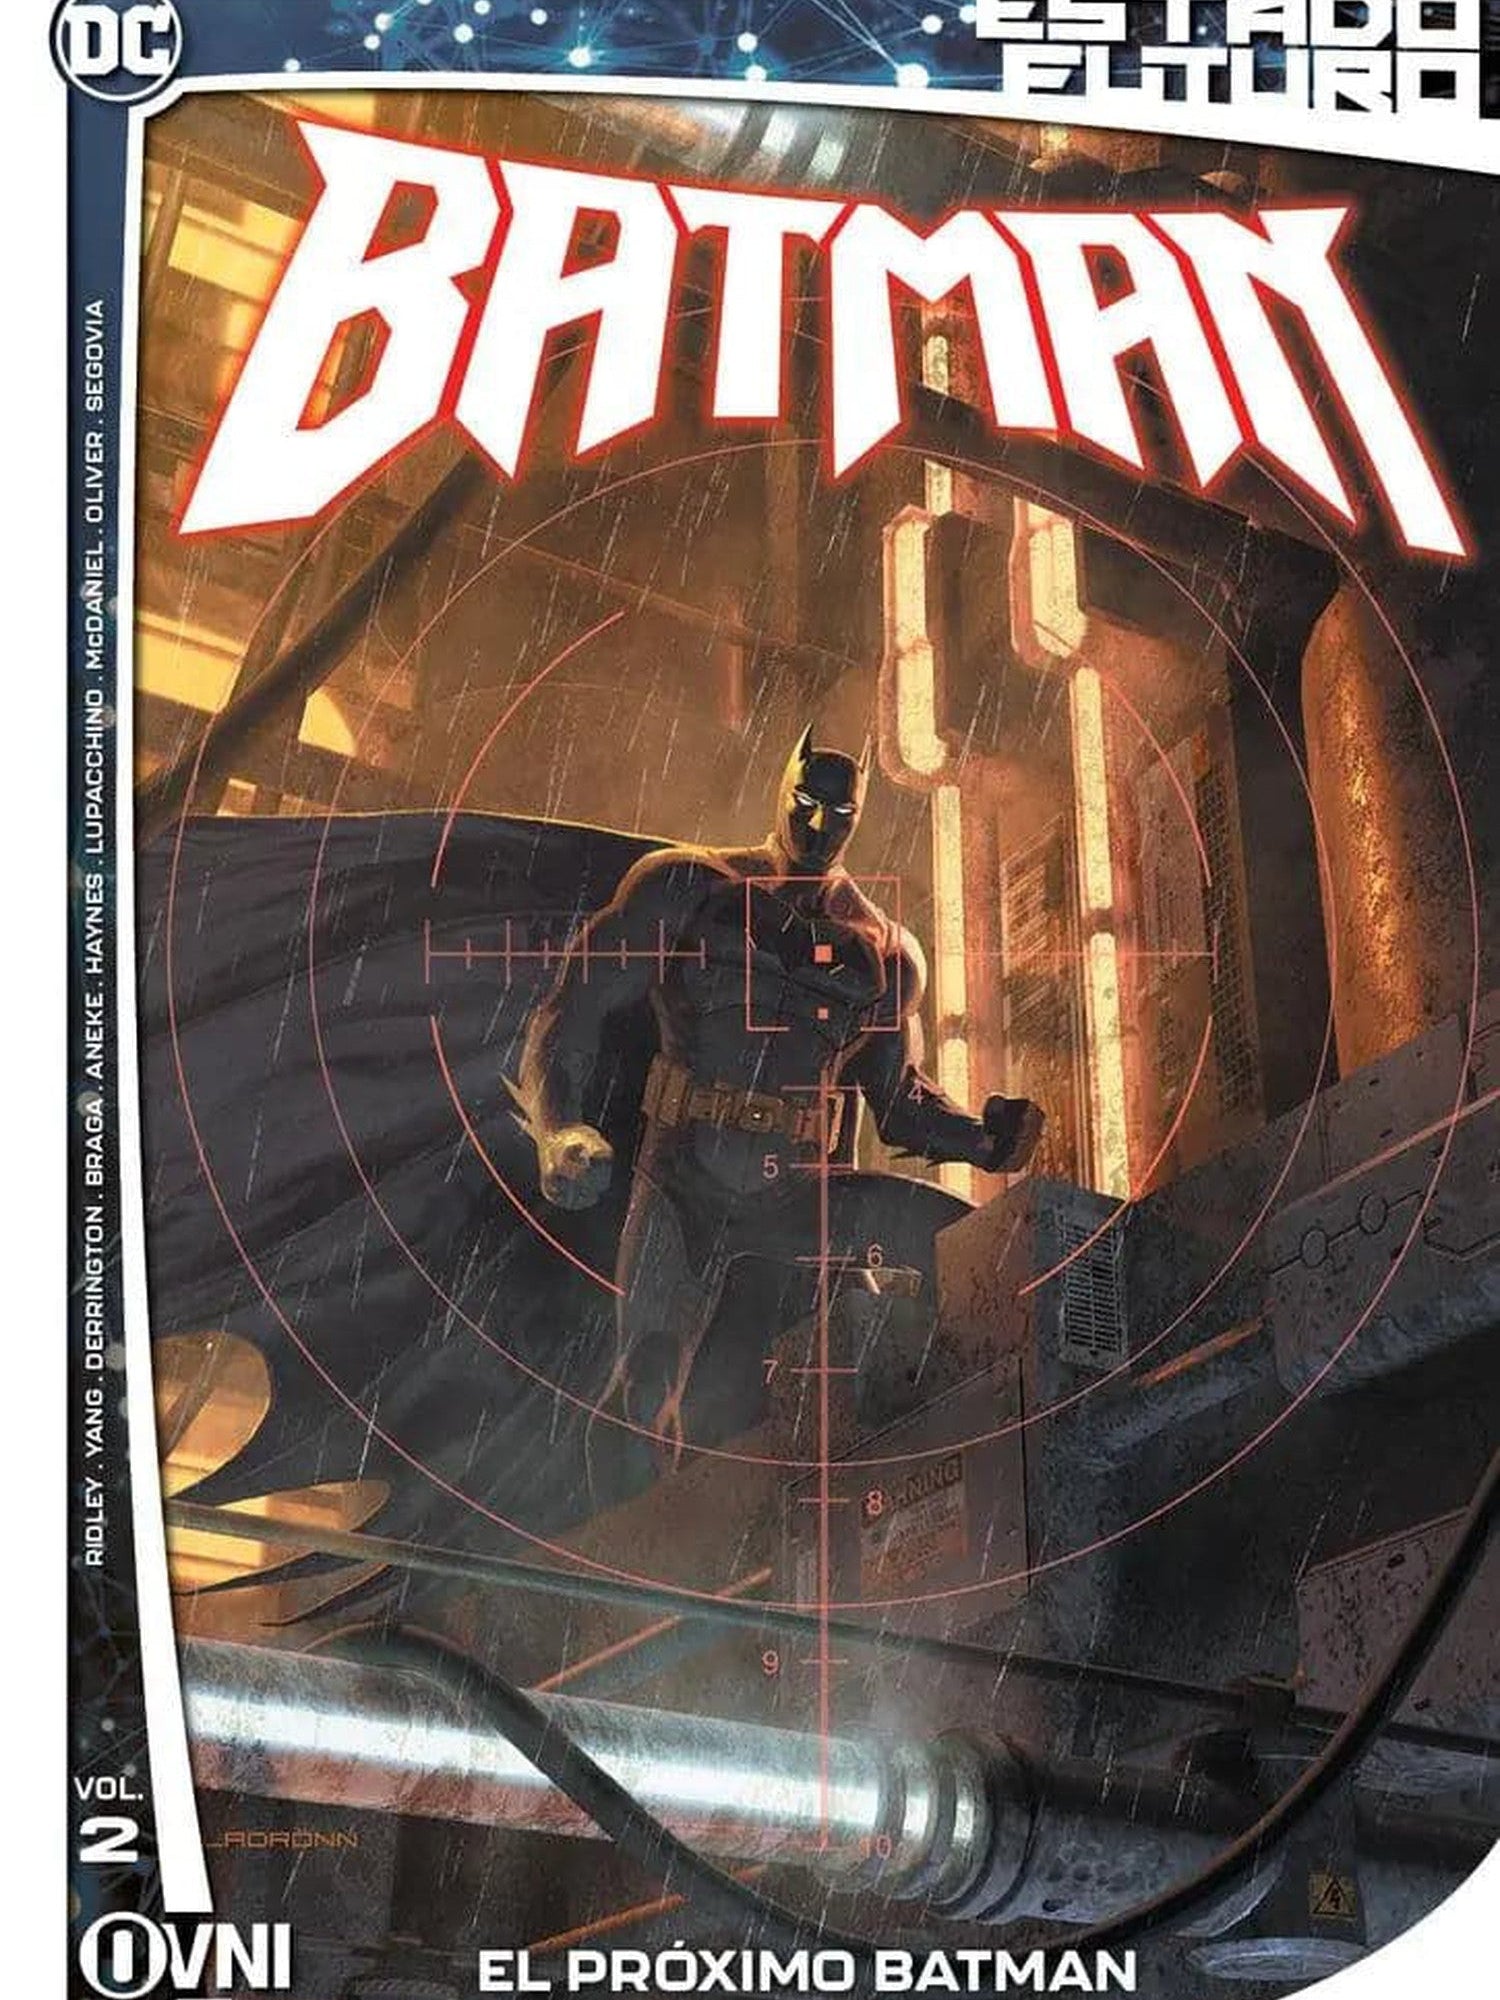 Estado Futuro: Batman Vol. 2